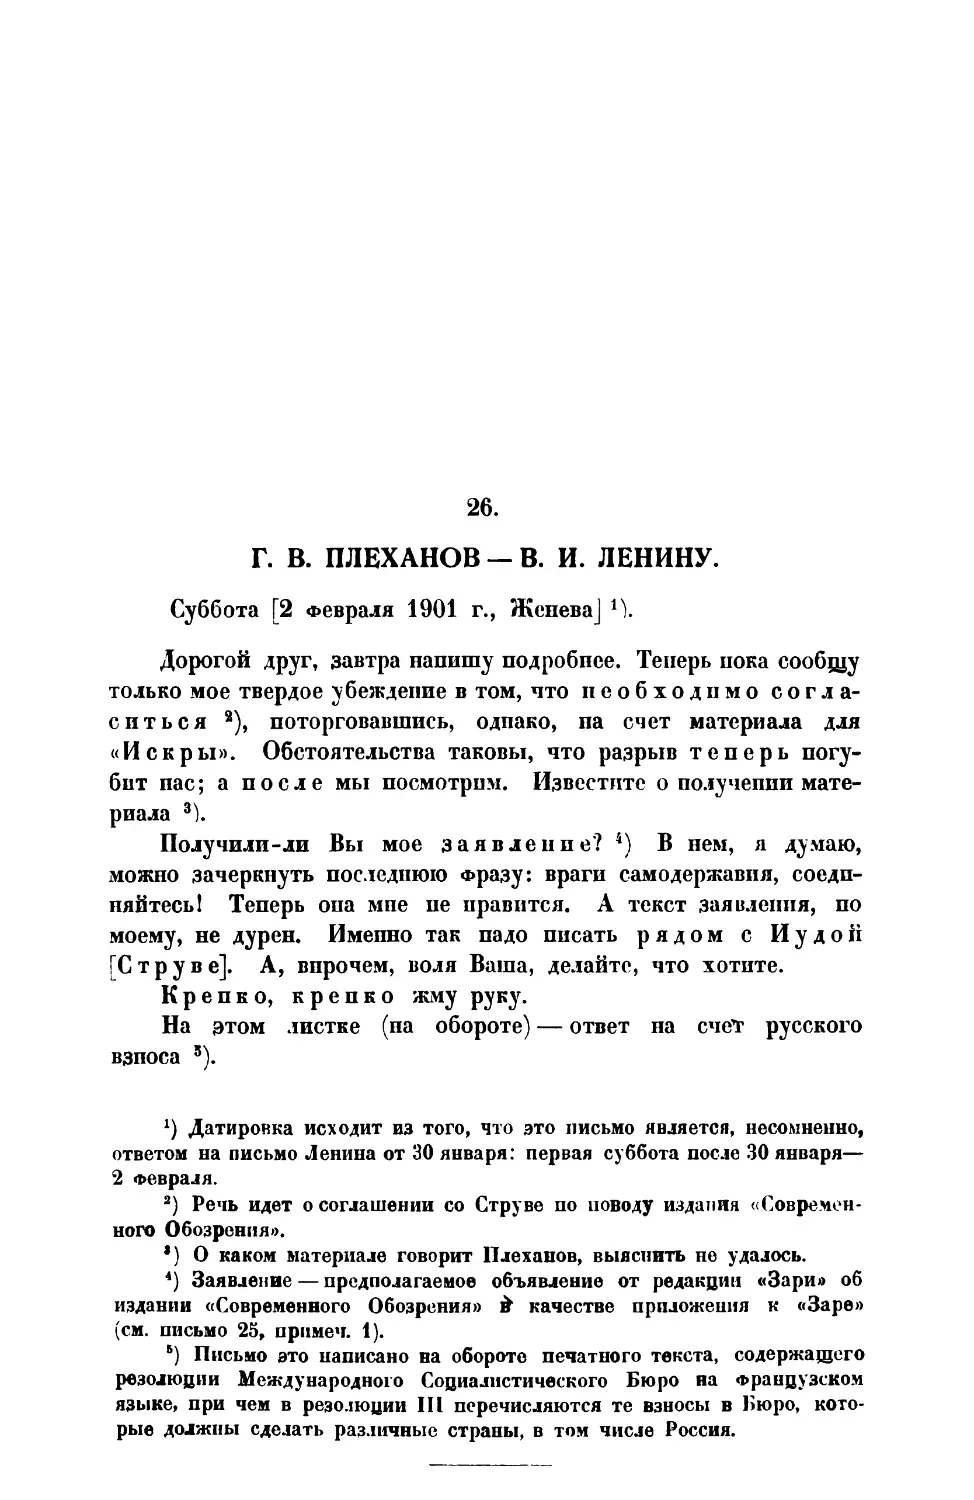 26. Г. В. П л е х а н о в. — Письмо В. И. Ленину от 2 II 1901 г.